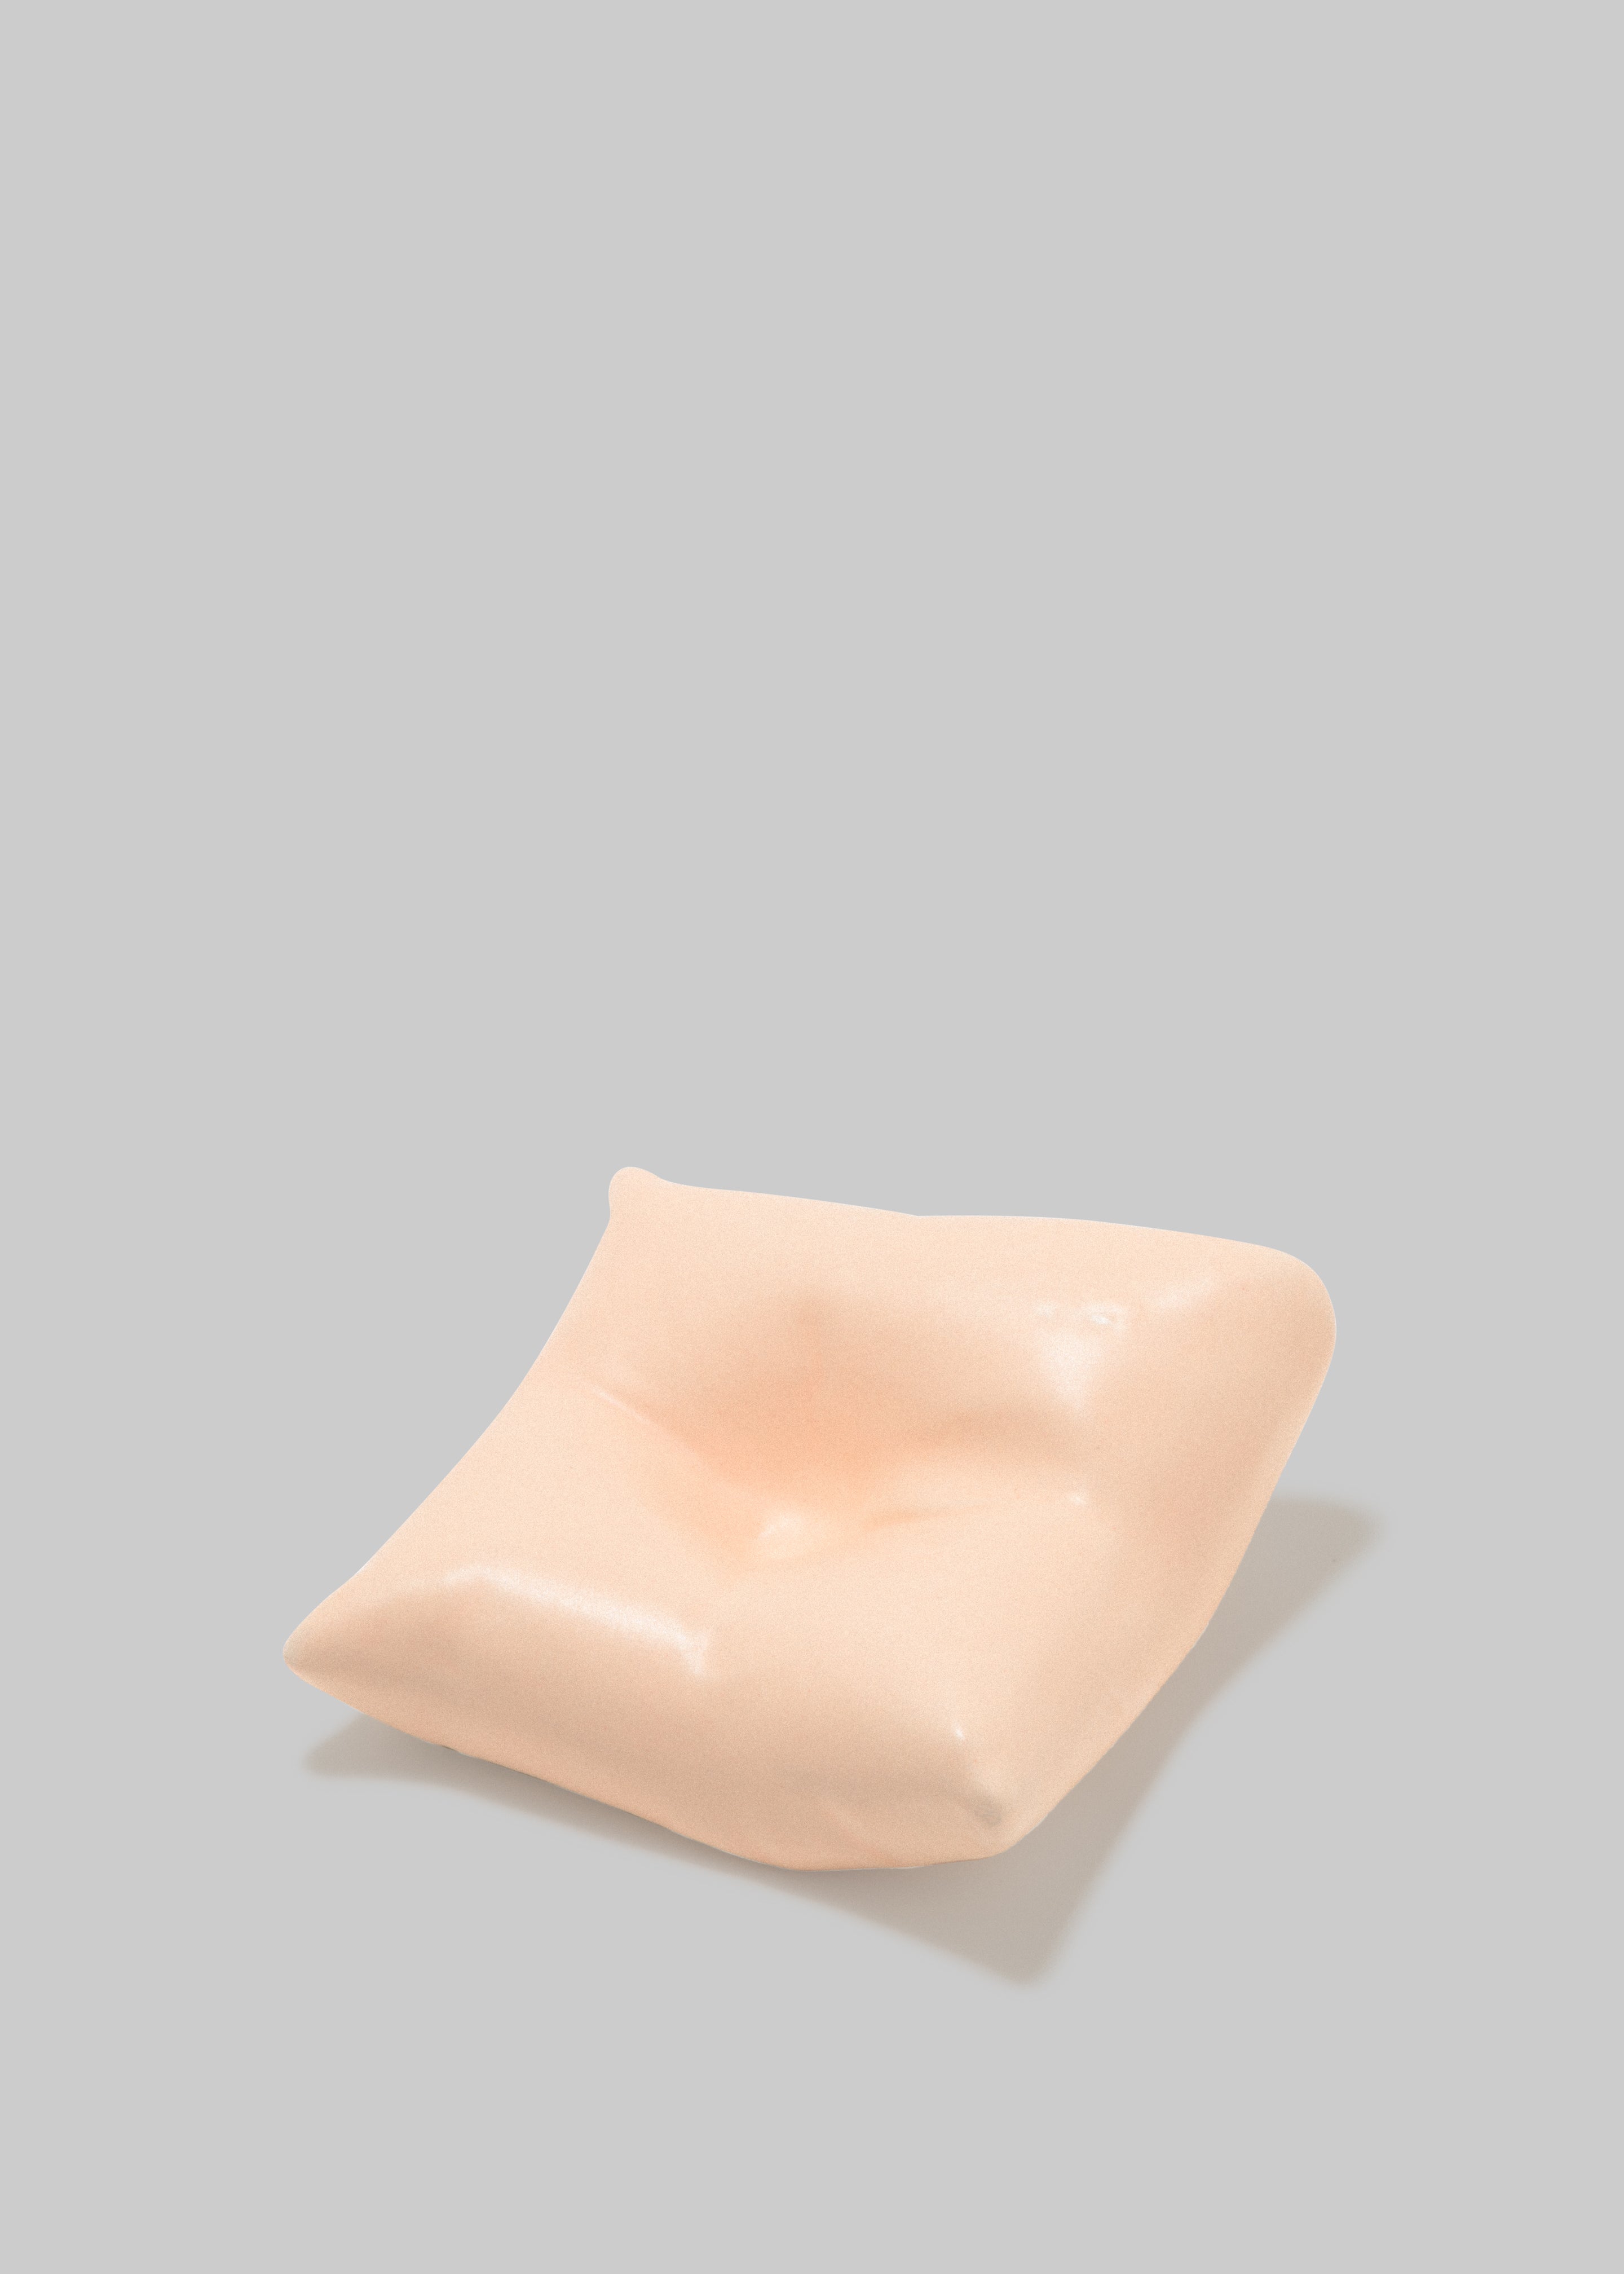 Completedworks Bumped II Ceramic Cushion - Matte Pale Peach - 2